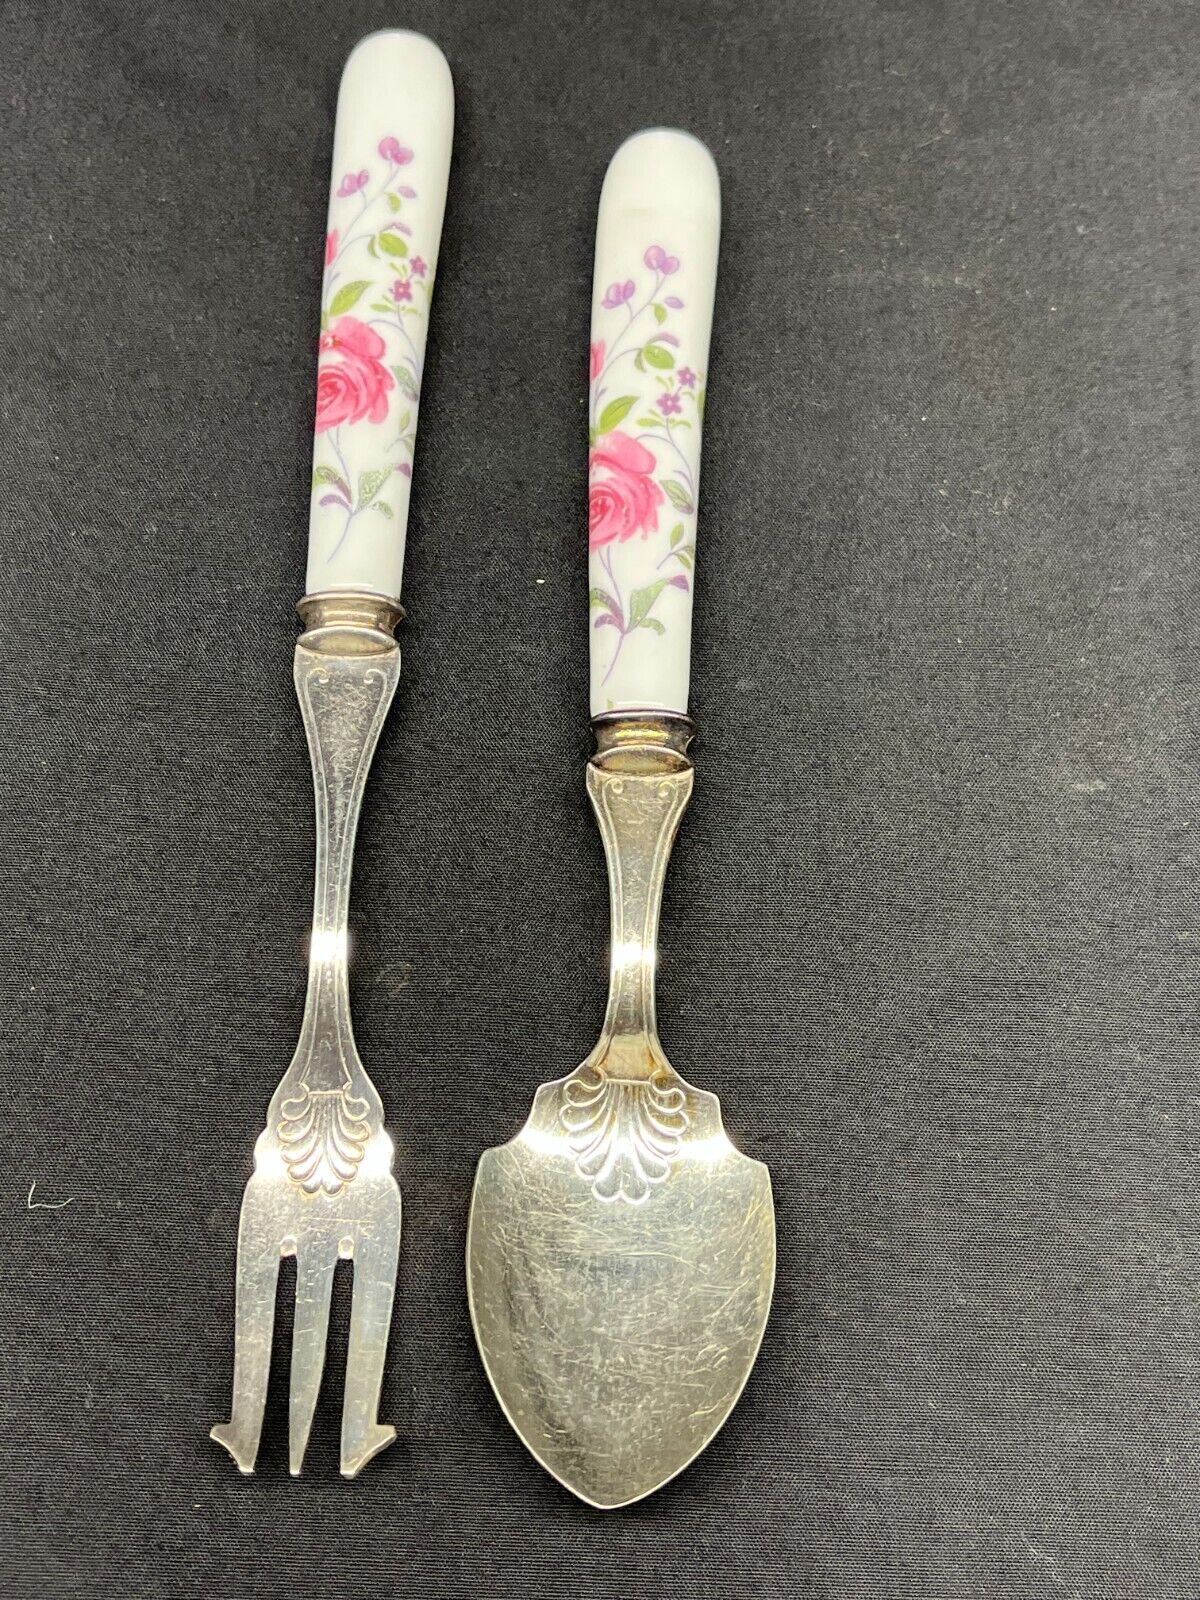 SHEFFIELD ENGLAND ðŸ‡¬ðŸ‡§ FLORAL PORCELAIN HANDLED Fish Fork & Spoon